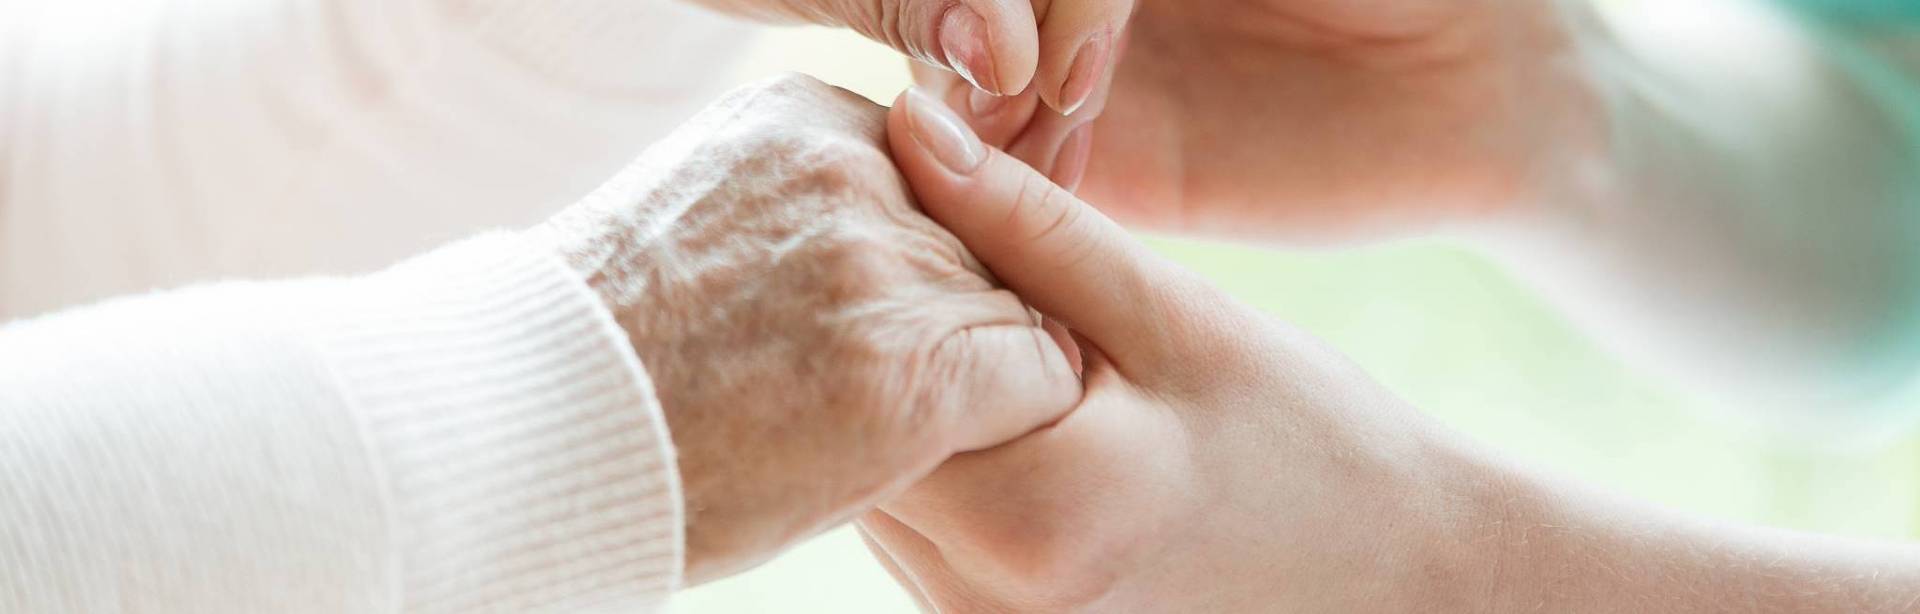 Residential Aged Care for Seniors